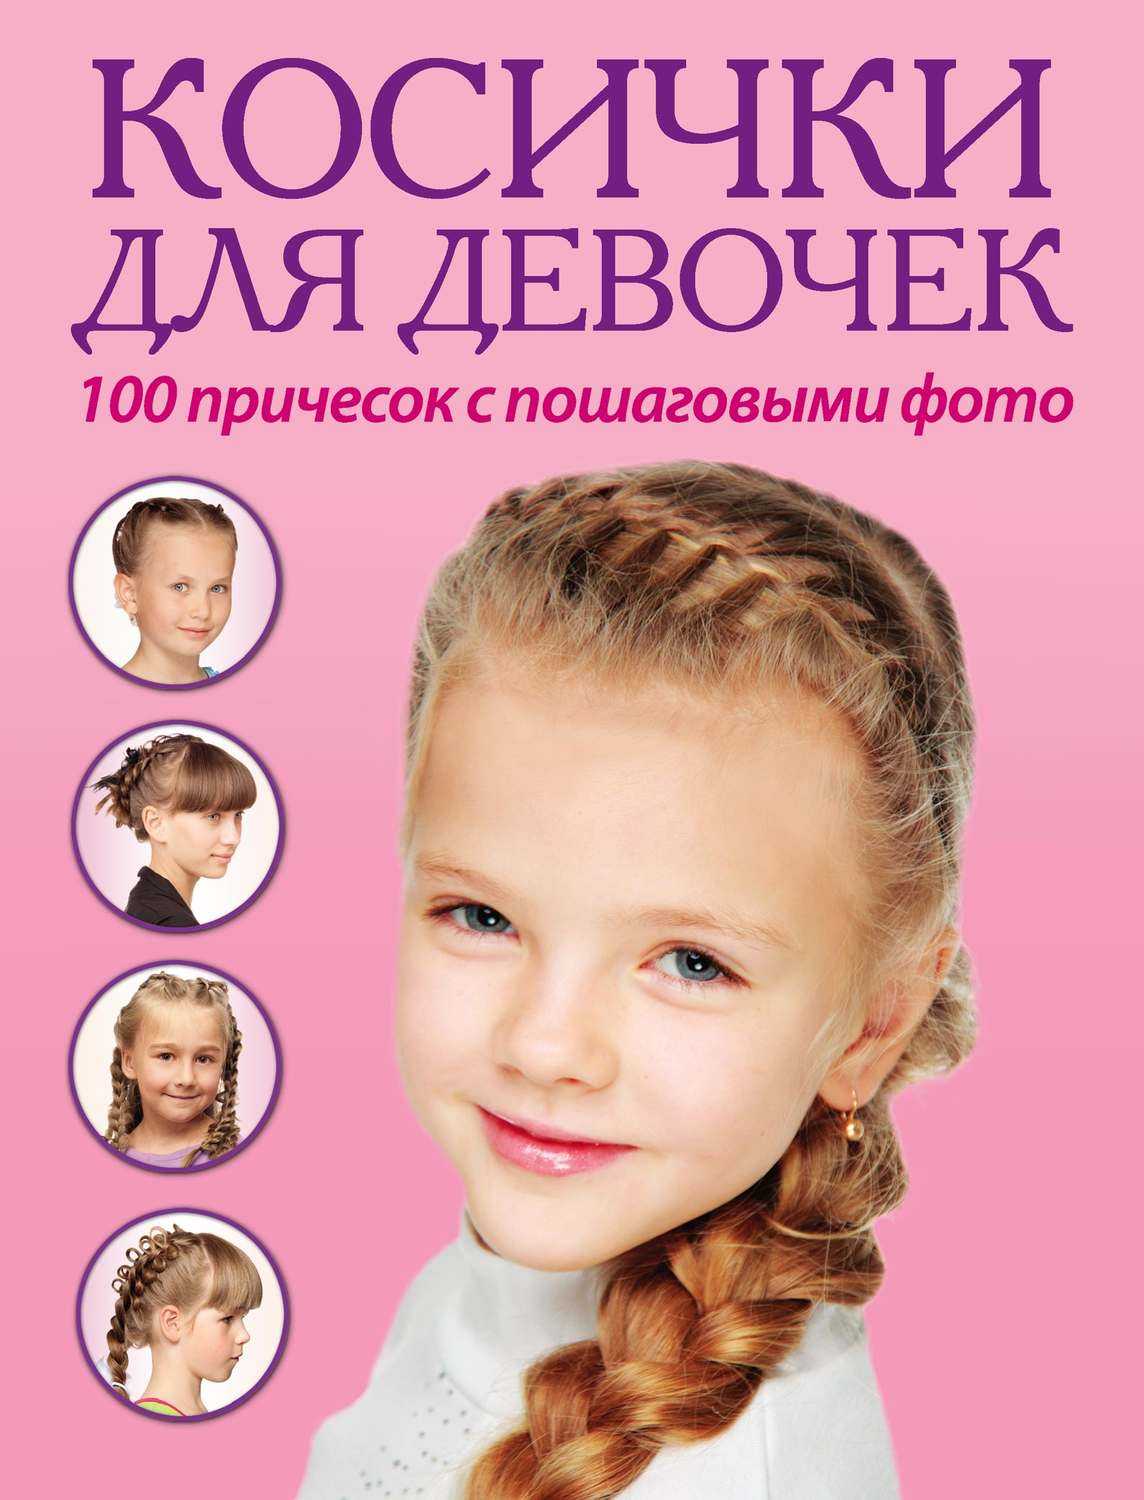 100 причесок из косичек для девочек с пошаговыми фото